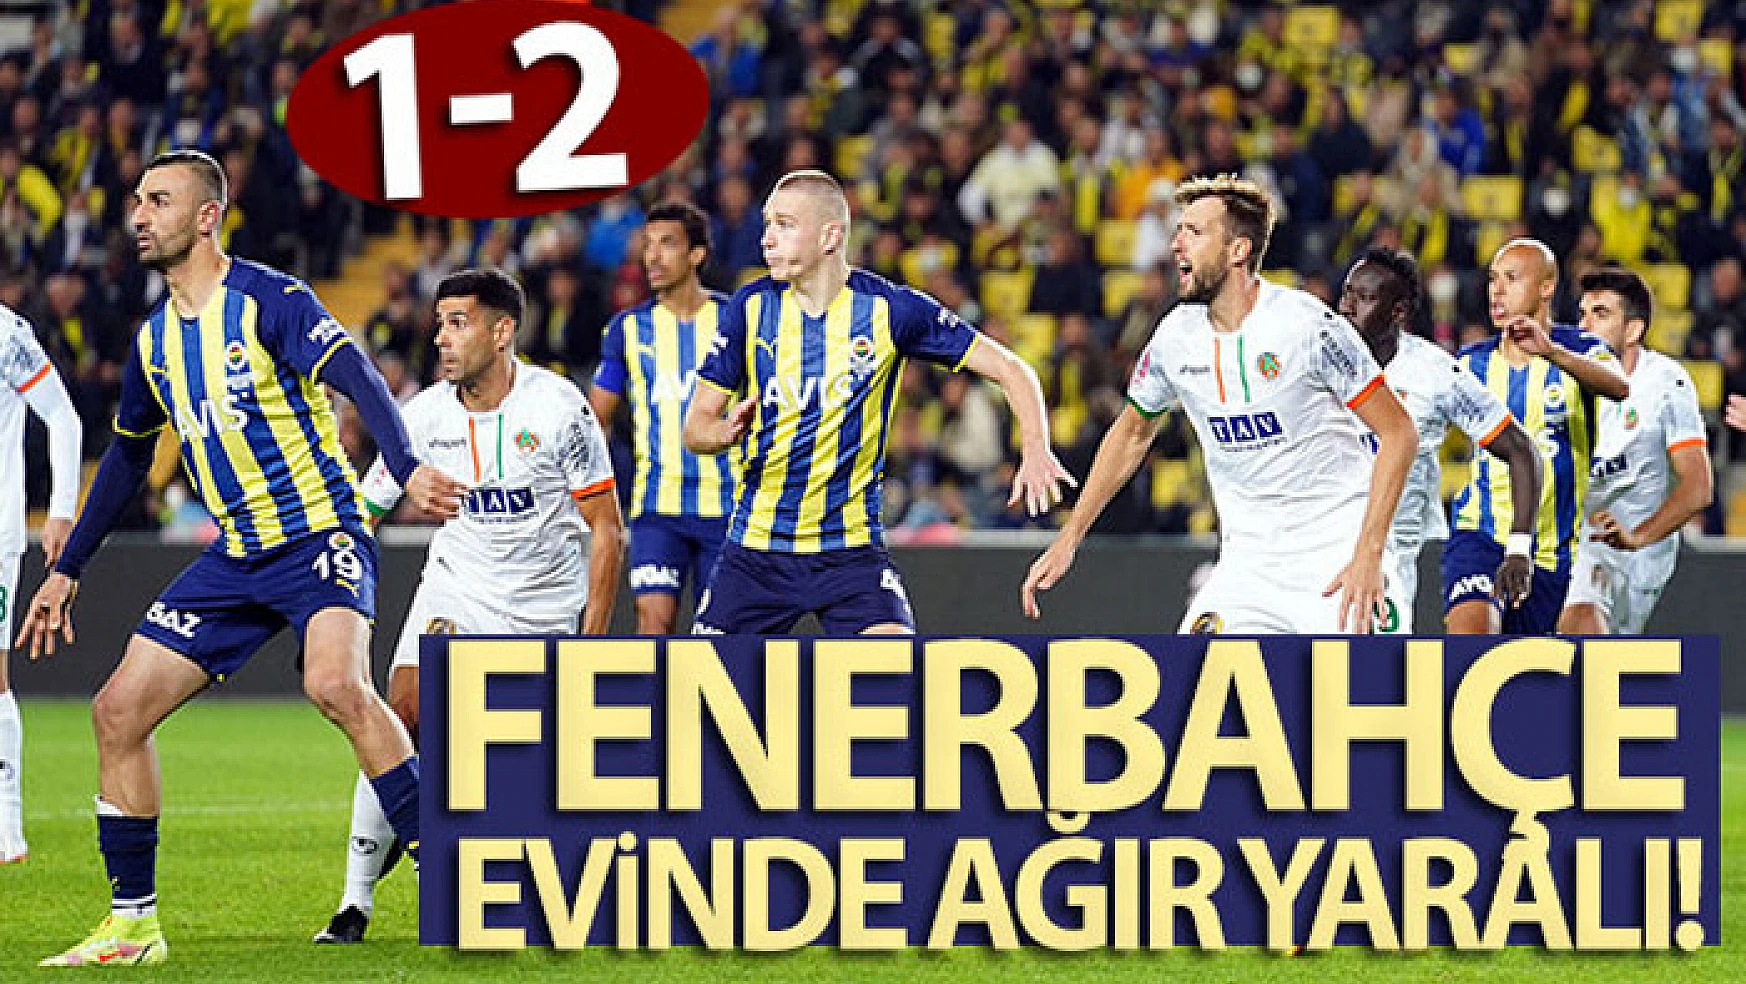 Fenerbahçe evinde ağır yaralı! Maç sonucu: Fenerbaçe 1-2 Alanyaspor